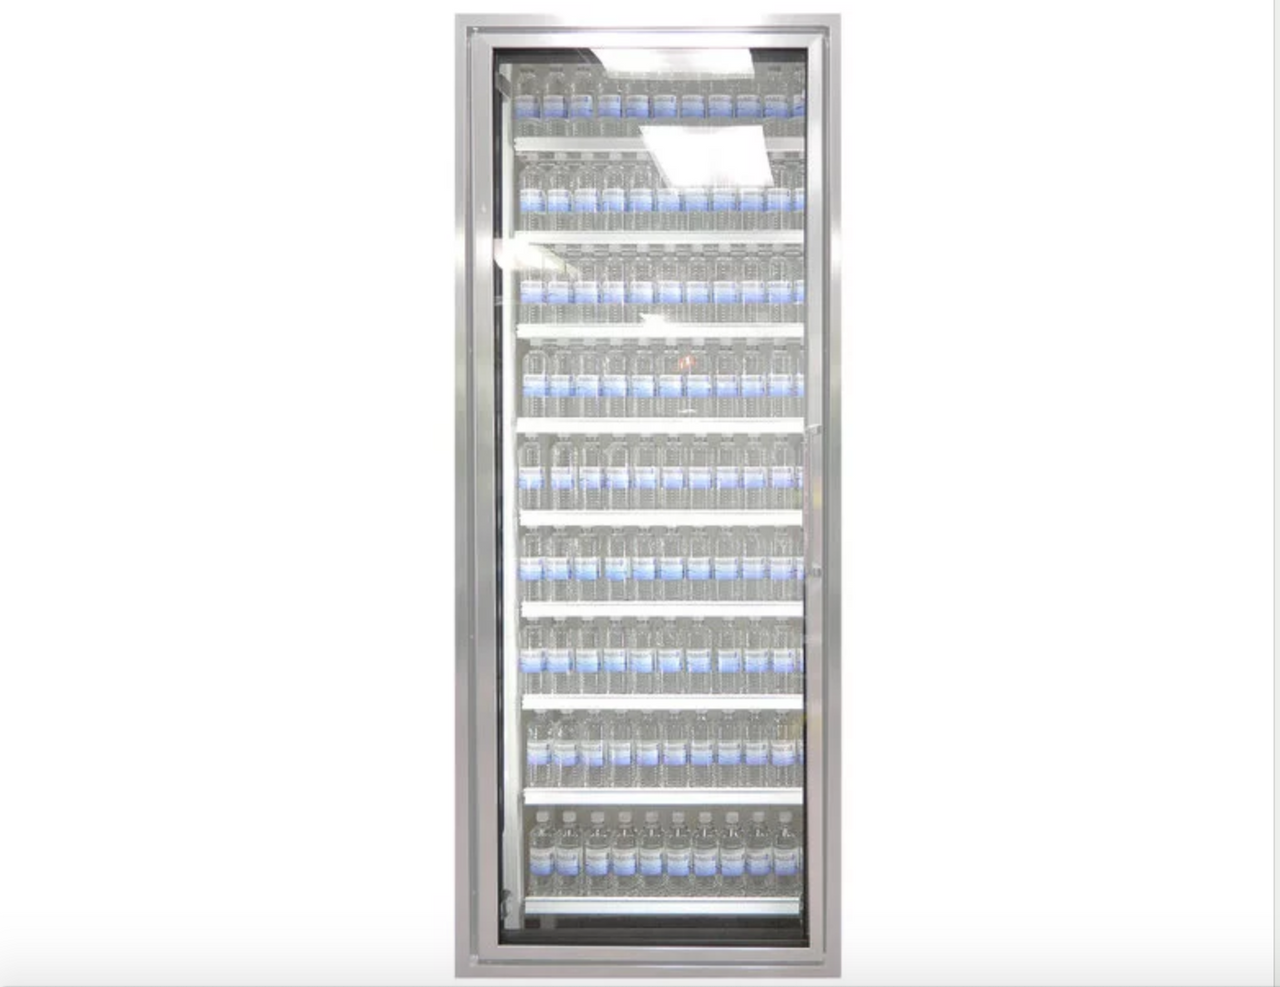 Classic Plus 24" x 72" Walk-In Freezer Merchandiser Door with Shelving - Anodized Satin Silver, Left Hinge-Styleline CL2472-LT 